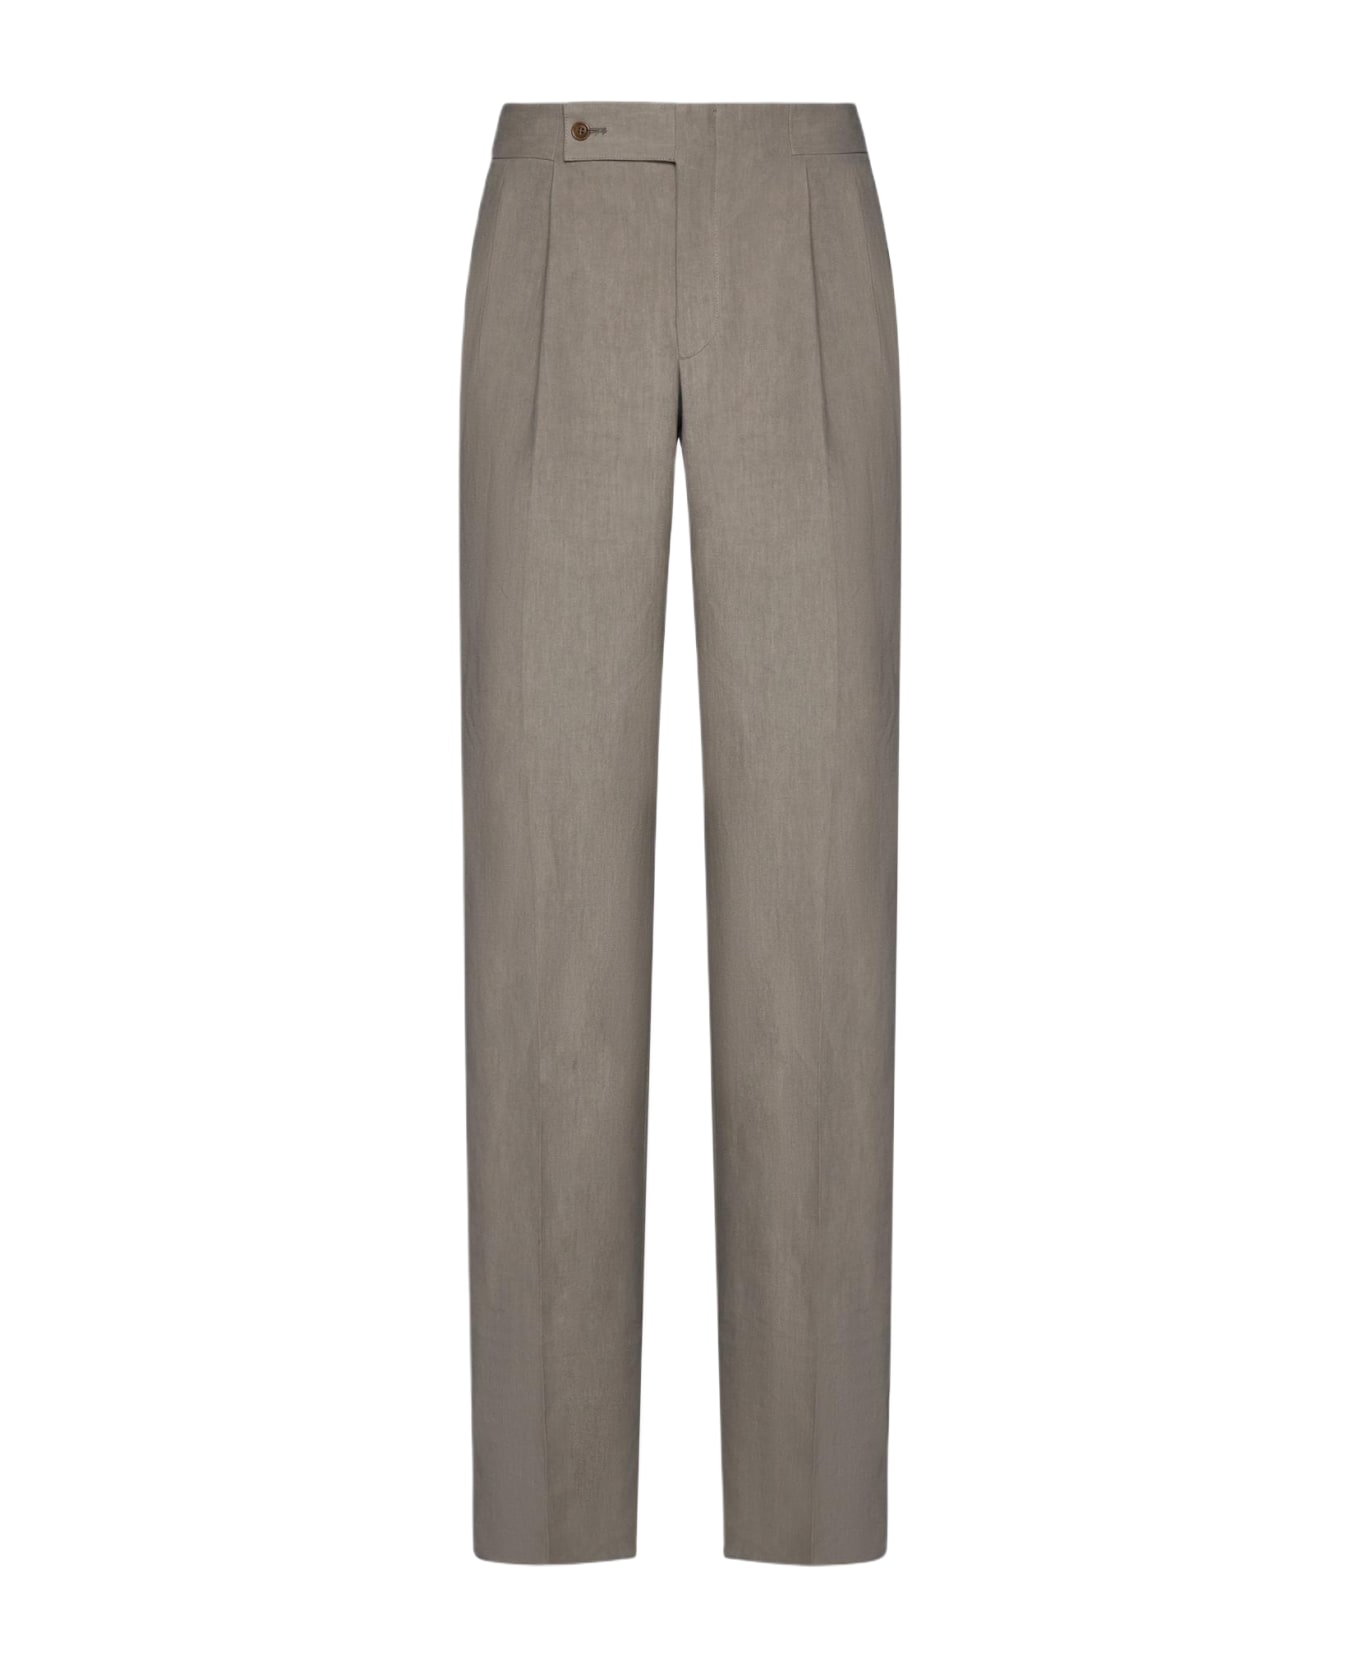 Giorgio Armani Linen Trousers - NEUTRALS